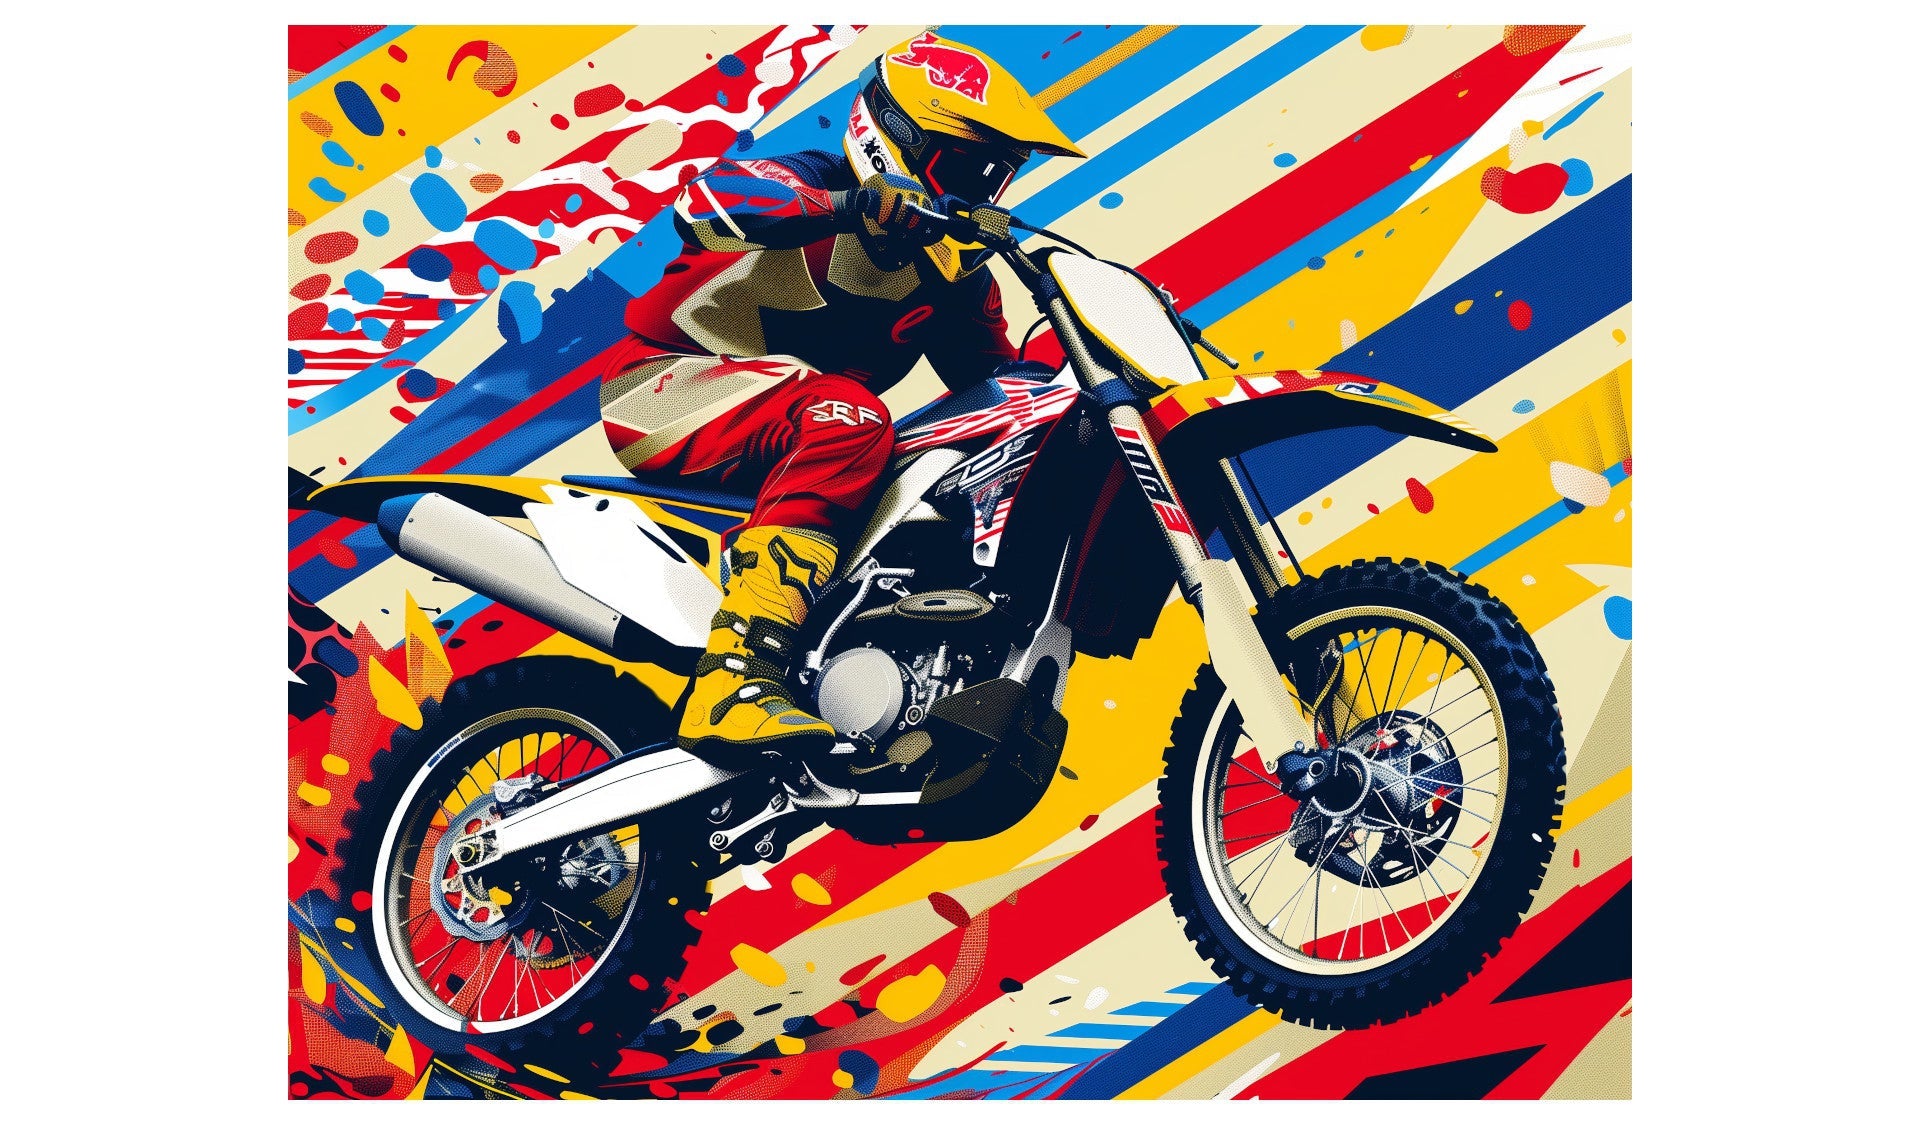 Motorrad-Art, Blog über News Motorrrad, Motorradsicherheit, Entwicklungsgeschichte Yamaha, Ducati, BMW, Honda, Suzuki